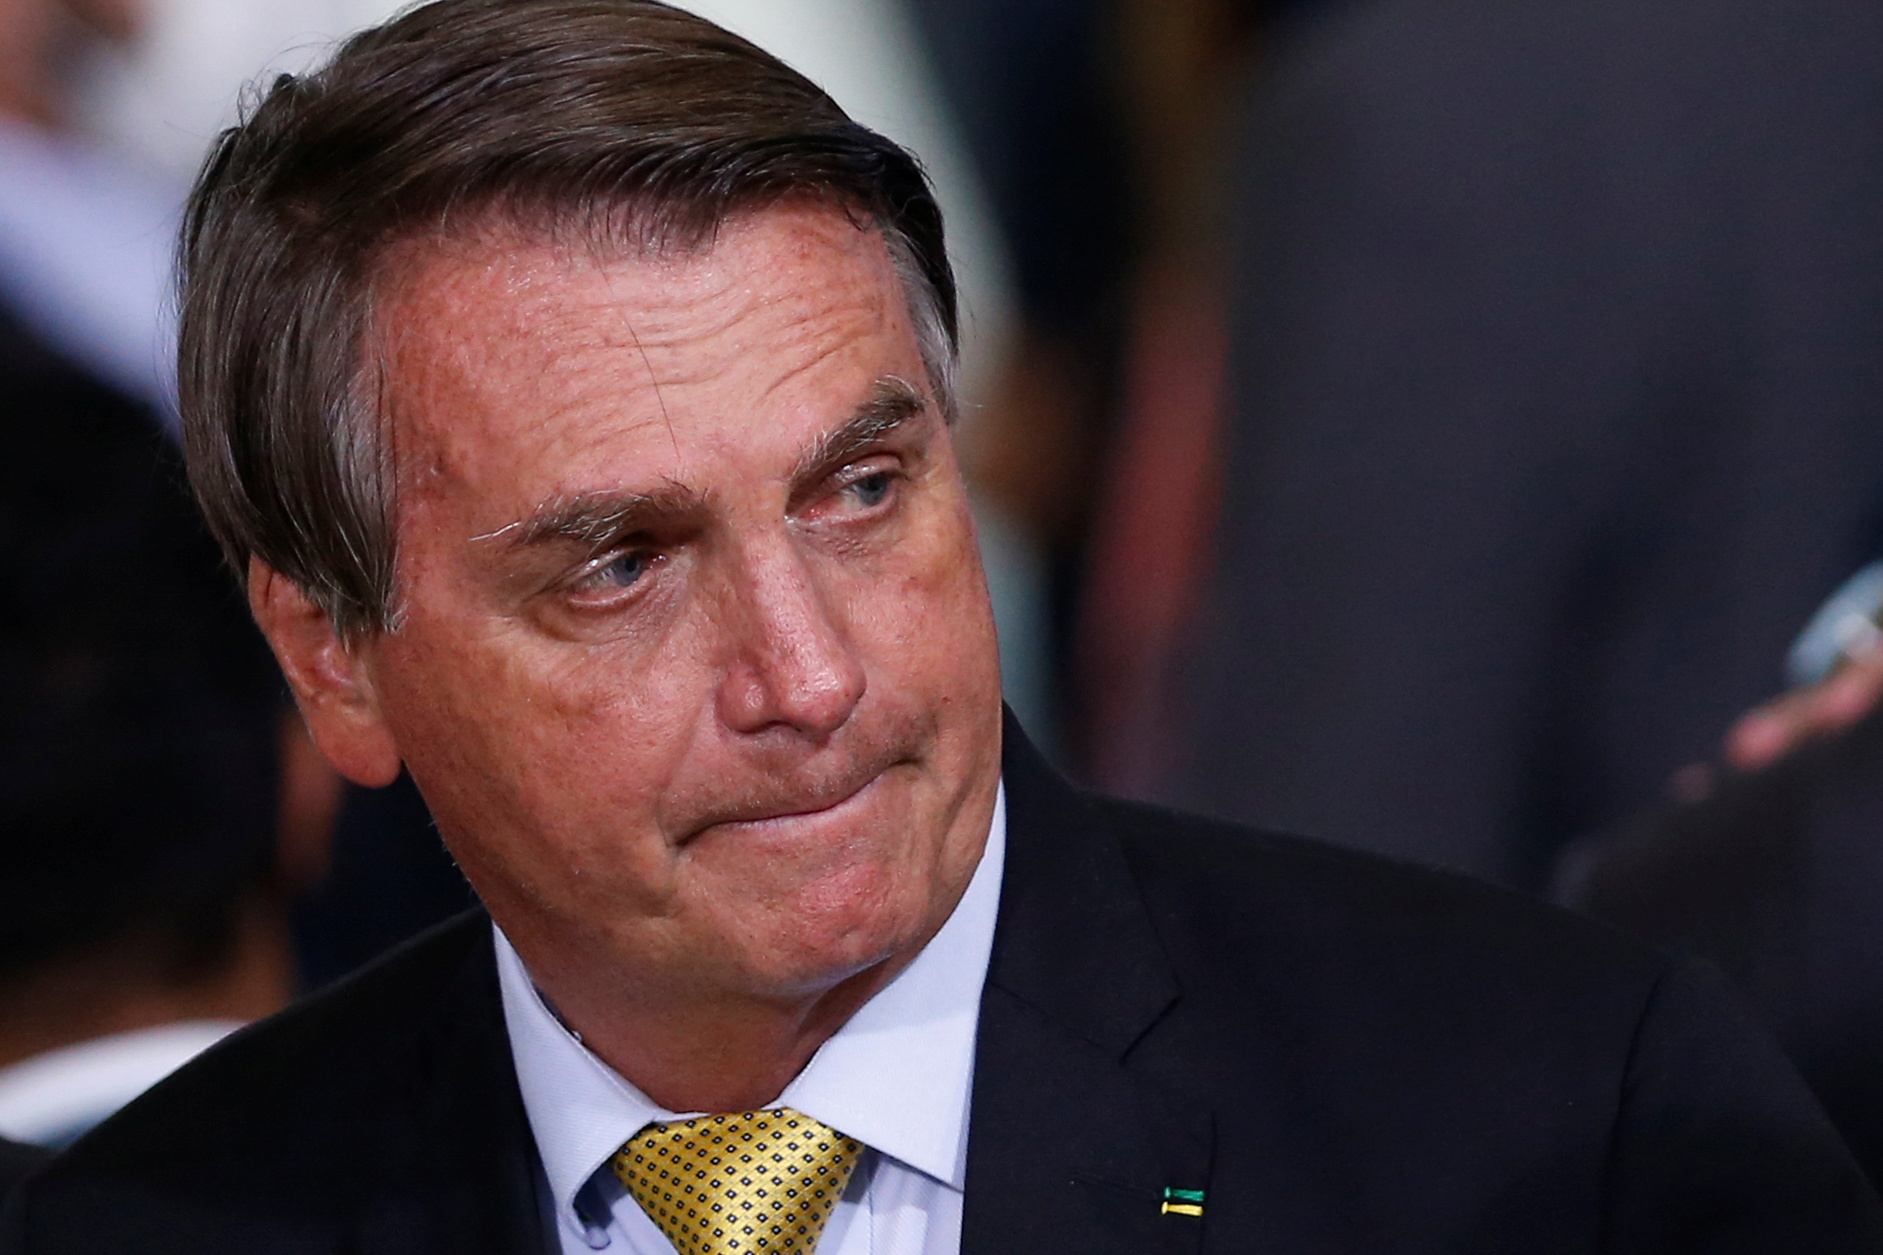 BRESIL : le parquet ouvre une enquête sur des accusations de « prévarication » contre Bolsonaro